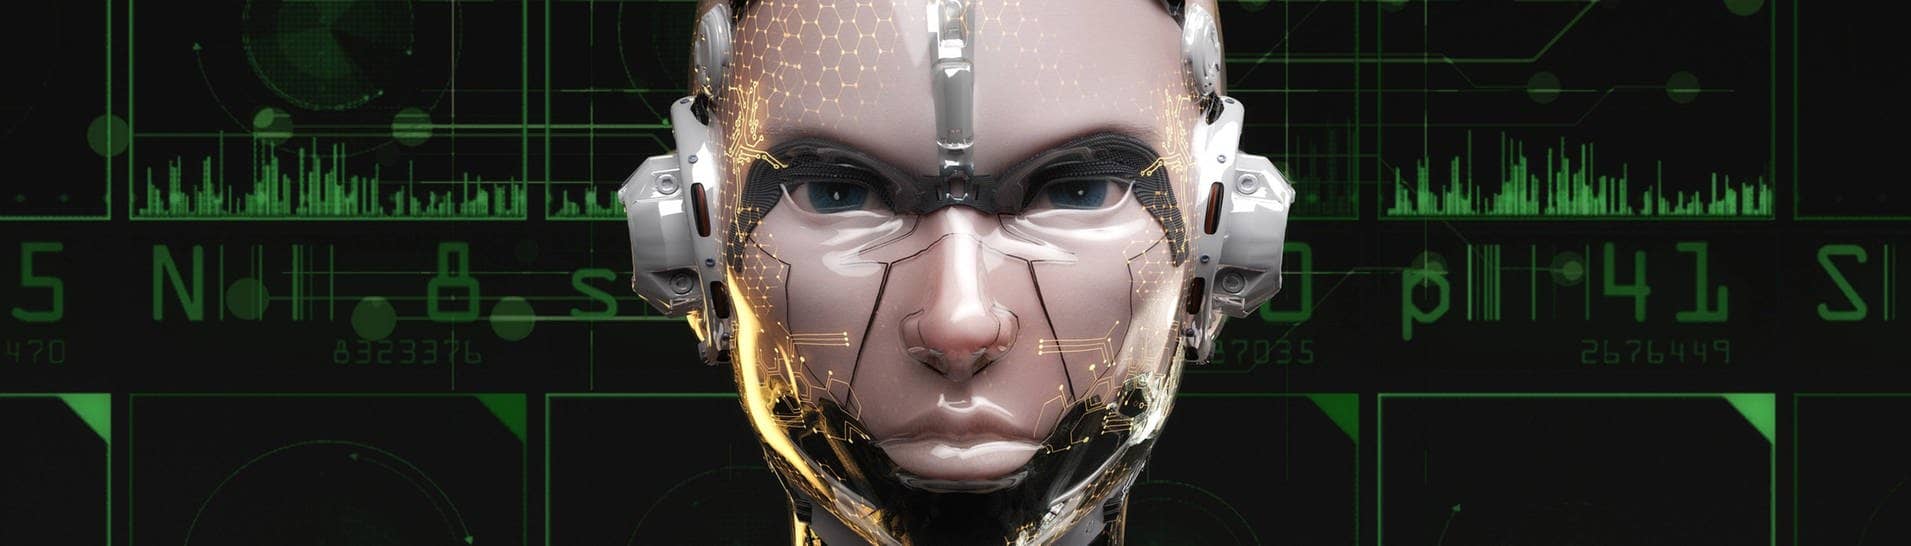 Künstlerische Darstellung eines humanoiden Roboters mit künstlicher Intelligenz. Der legendäre Entwickler Hinton steigt aus und warnt jetzt vor eigenen Erfindungen.  (Foto: IMAGO, IMAGO / CHROMORANGE)